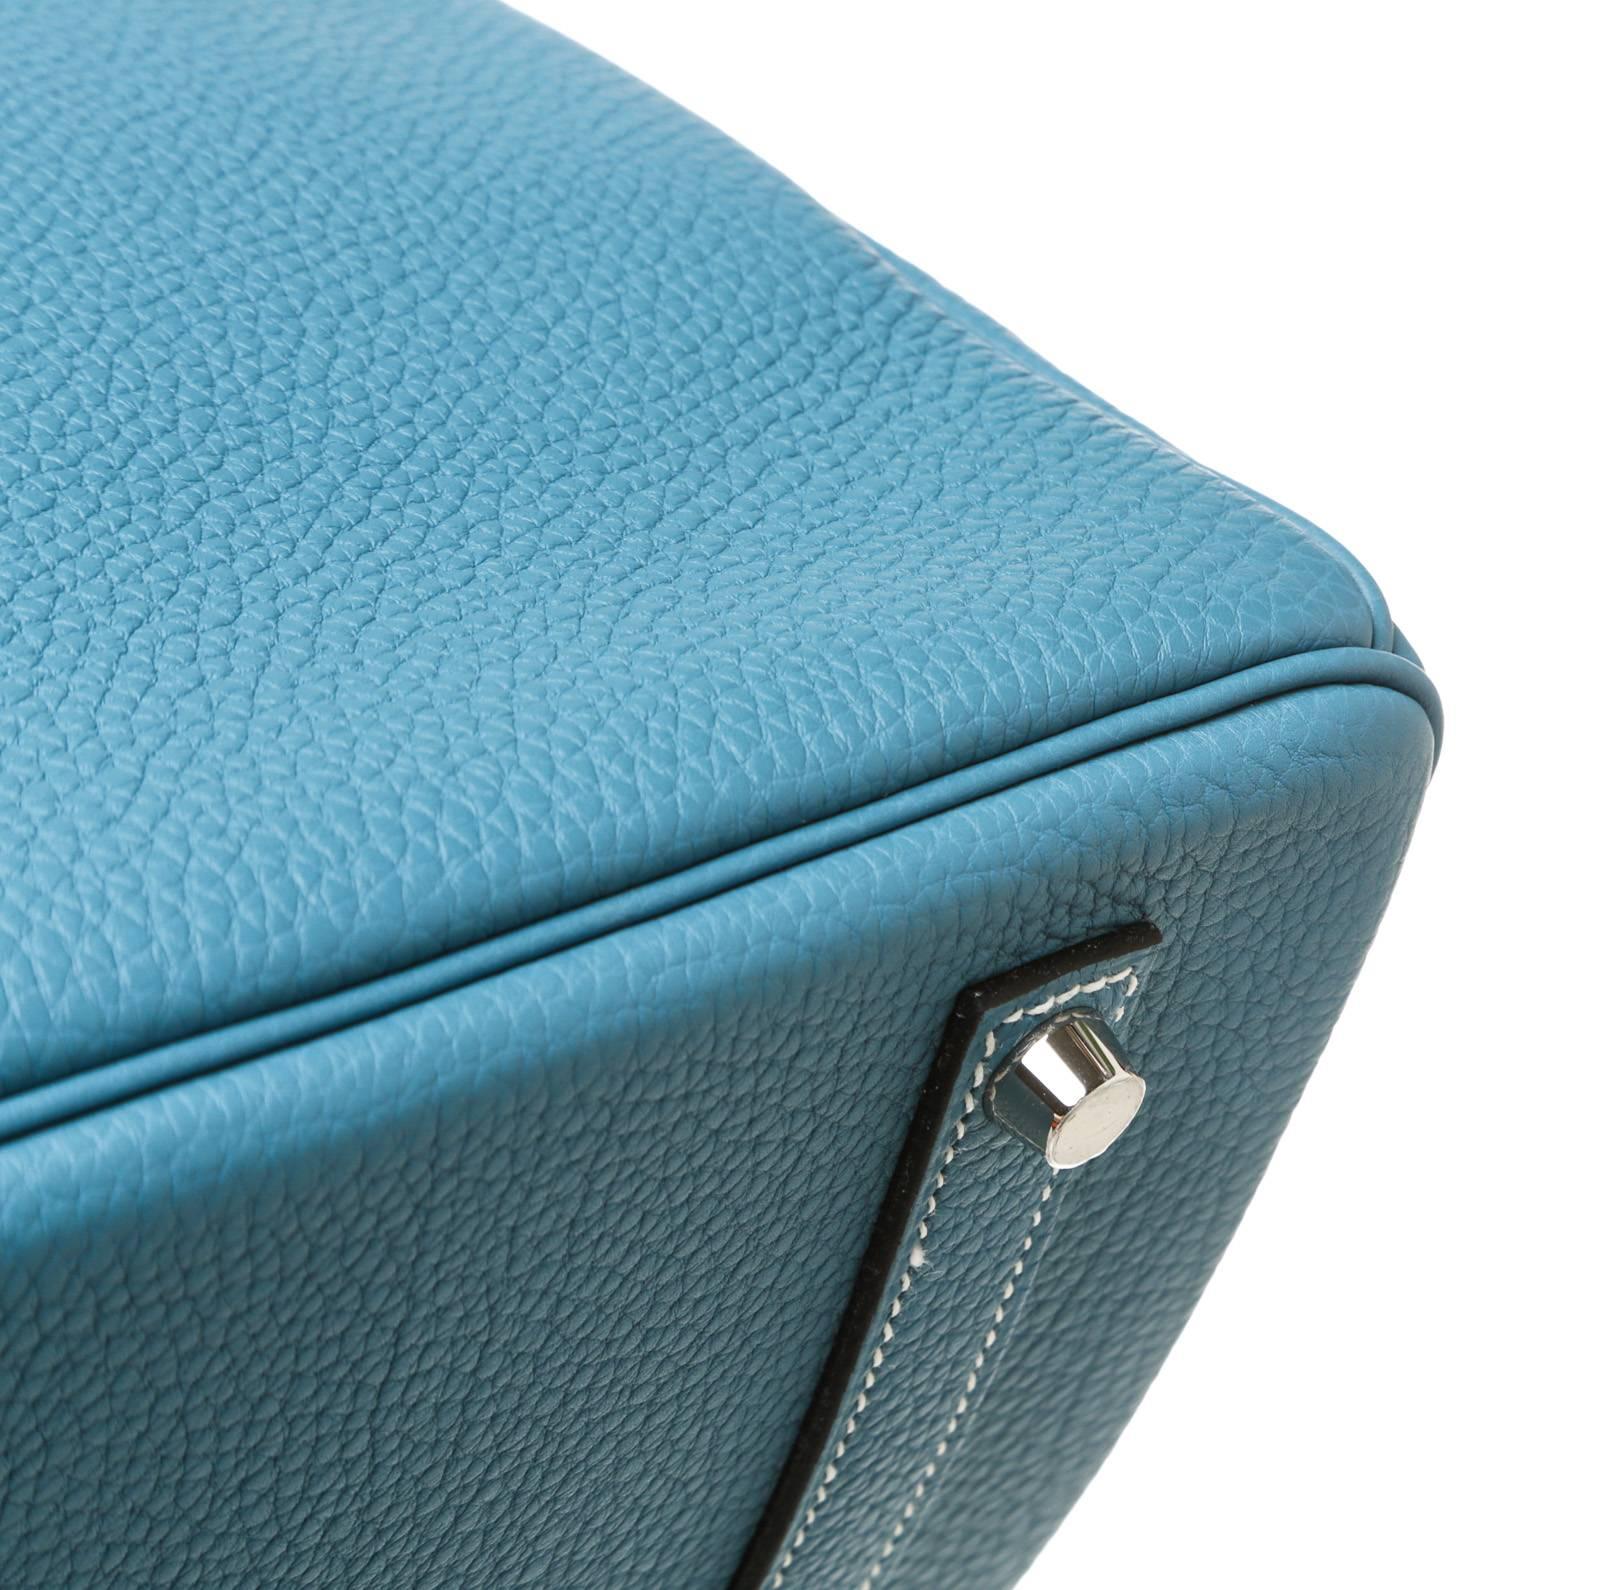 Hermes Bleu Jean Togo Leather Birkin 35cm Handbag SHW For Sale 3